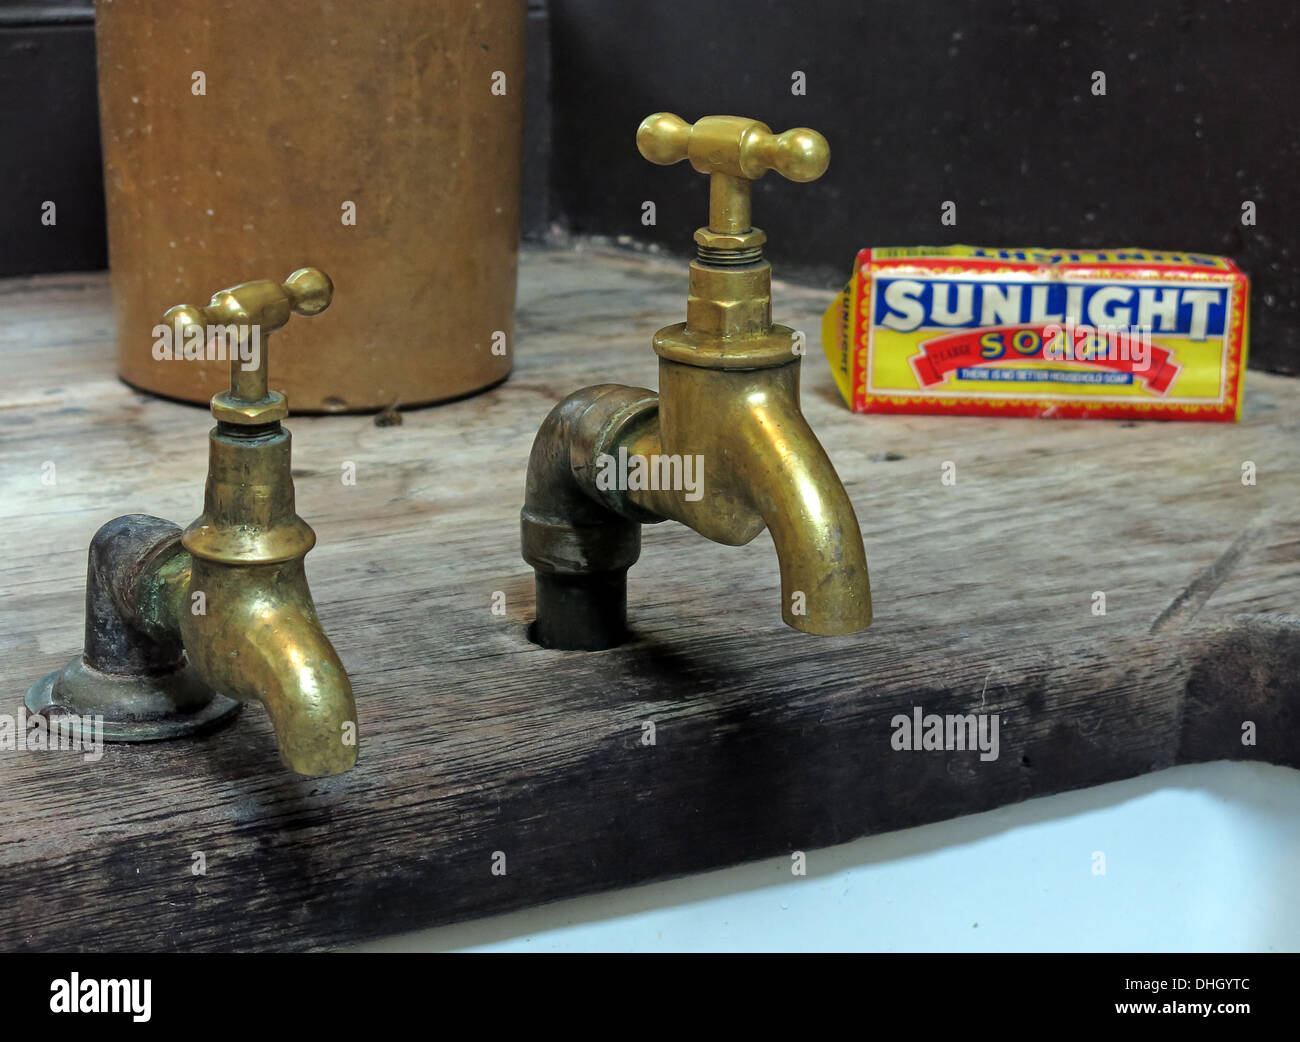 Deux vieux robinets en laiton victorien historique, le levier du soleil soap sur un évier Belfast en Angleterre, Royaume-Uni Banque D'Images